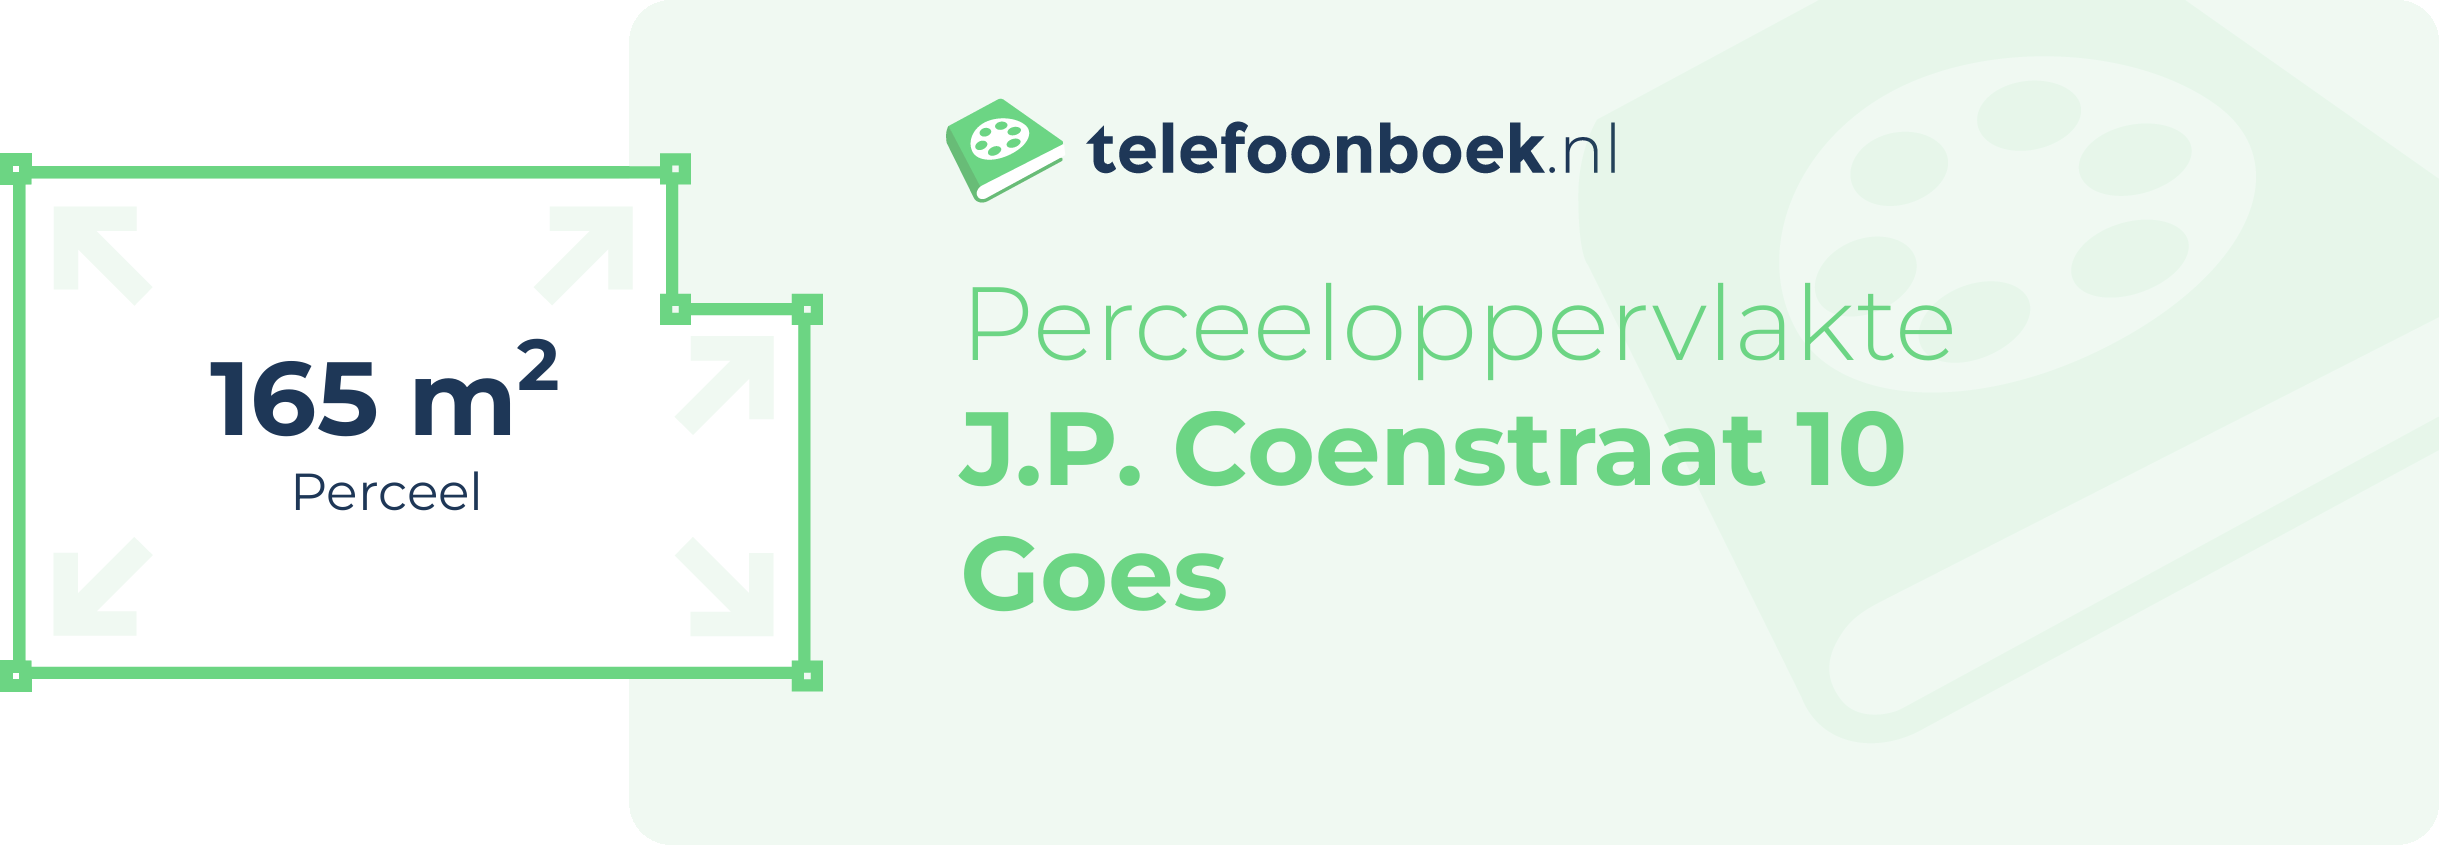 Perceeloppervlakte J.P. Coenstraat 10 Goes